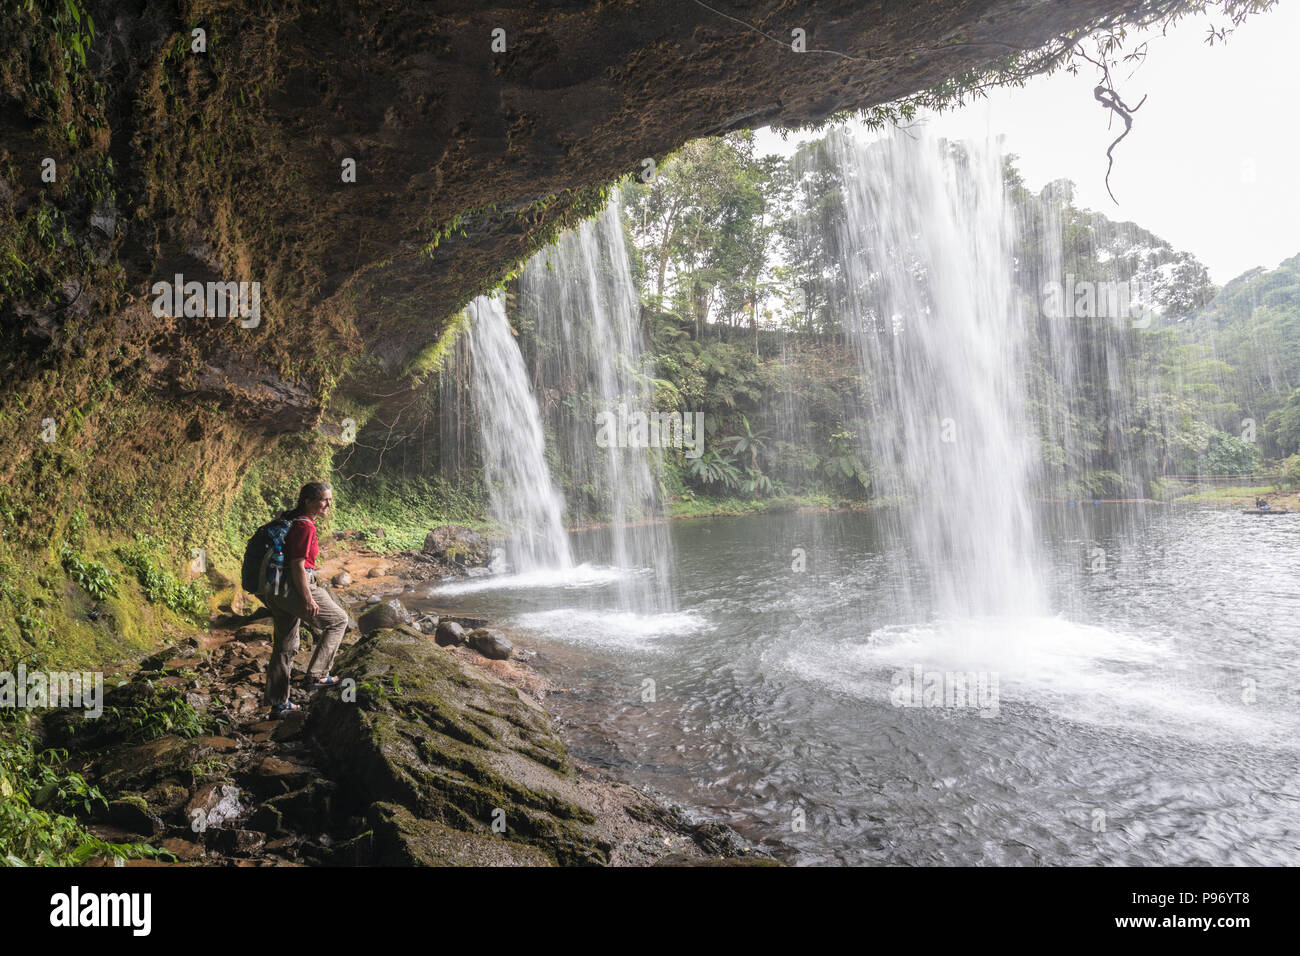 La cascata nel parco naturale, Tham Champy, Paksong, Laos Foto Stock